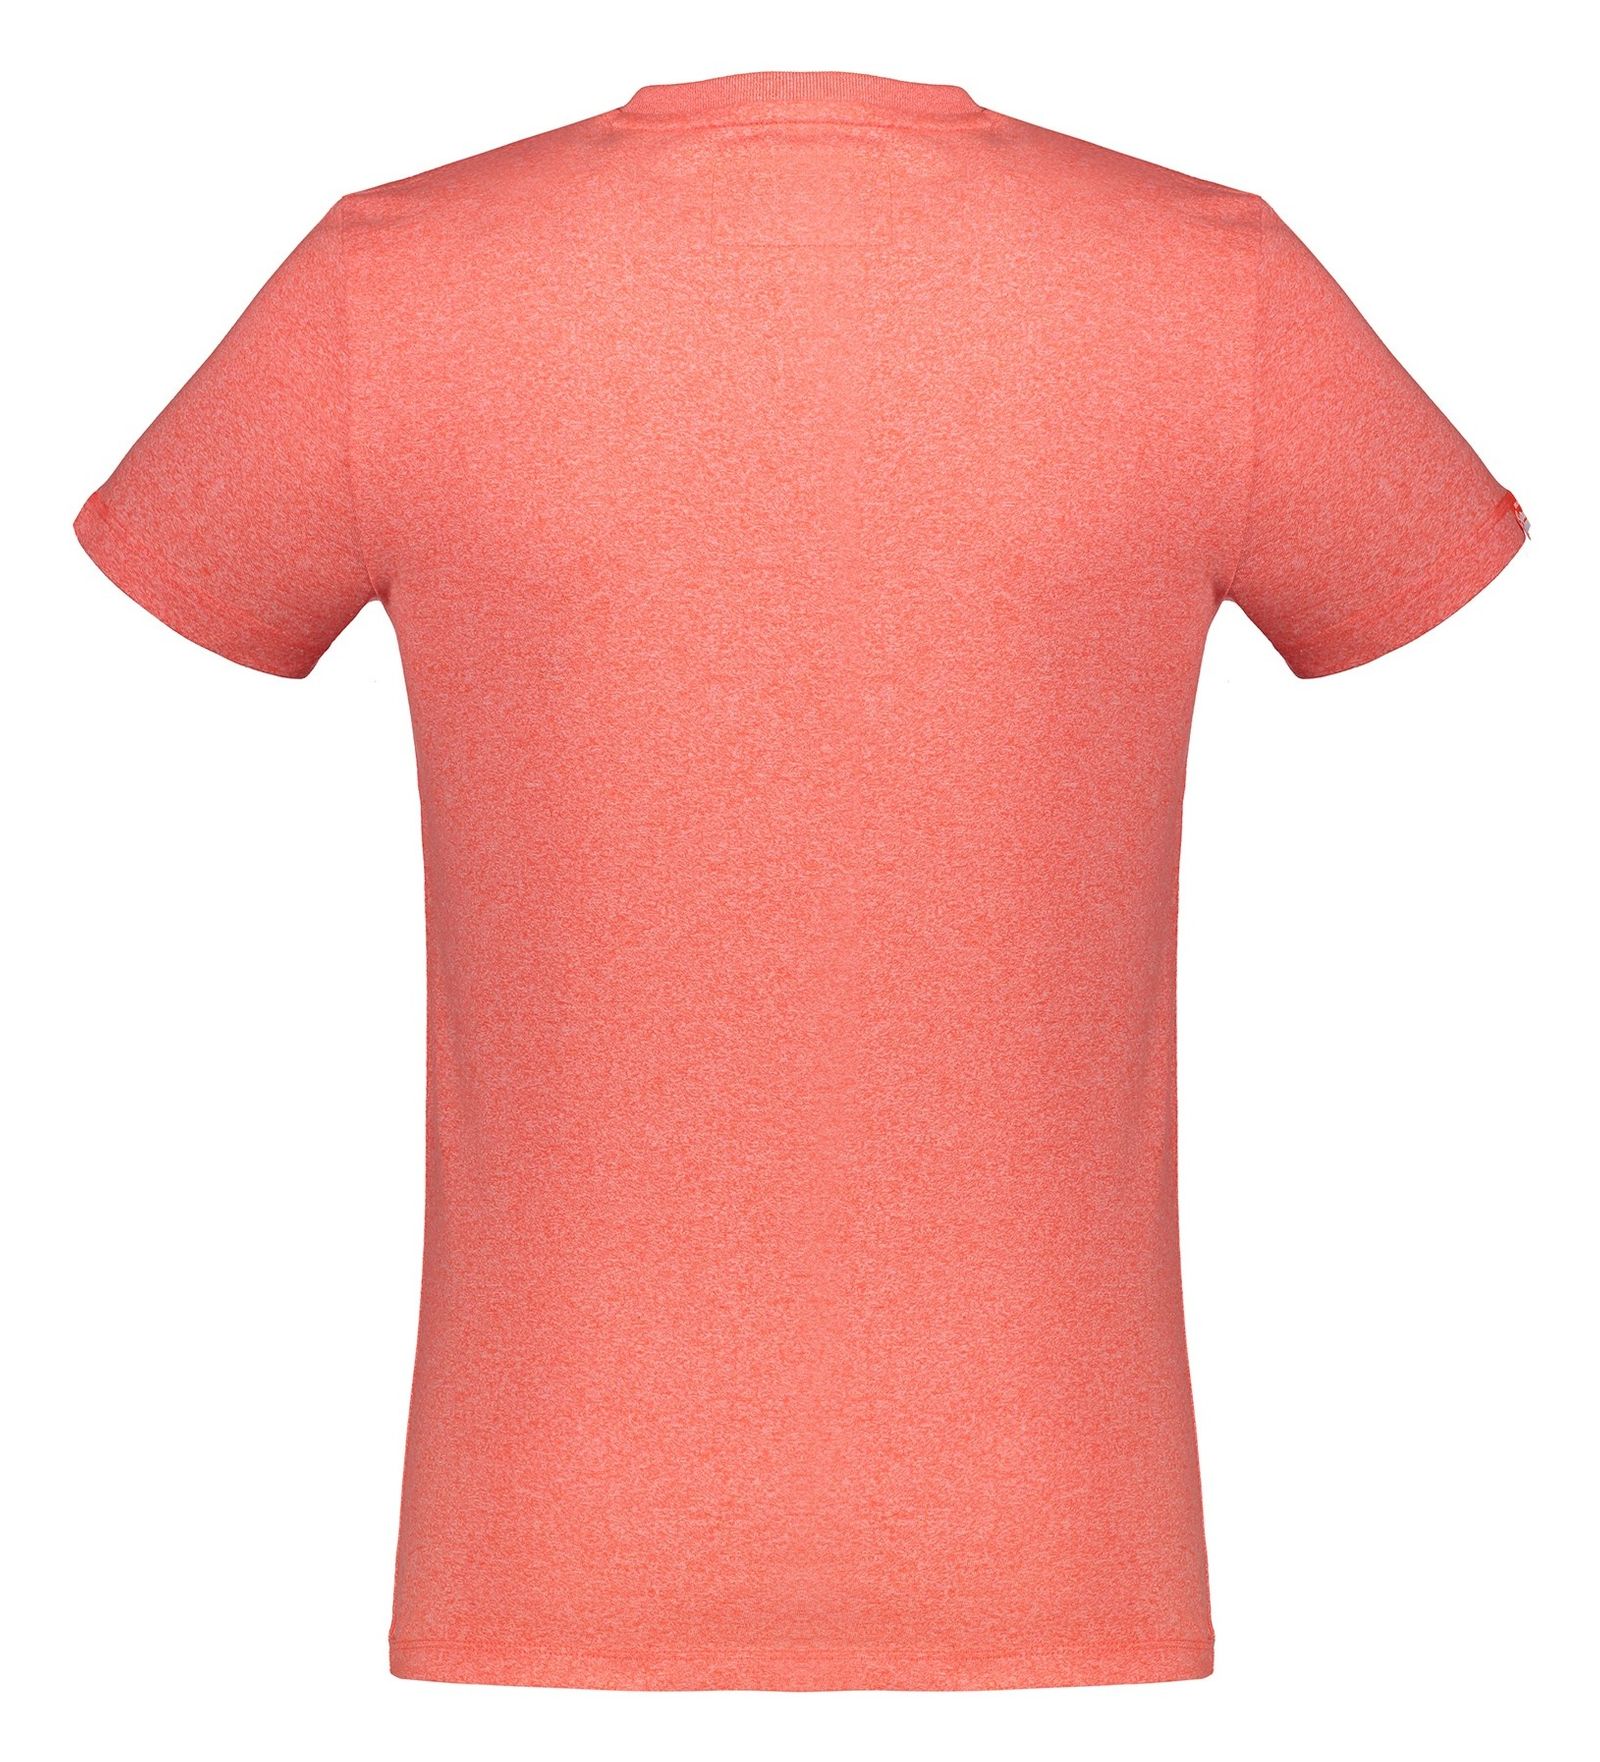 تی شرت نخی مردانه ORANGE LABEL - سوپردرای - رزگلد - 3